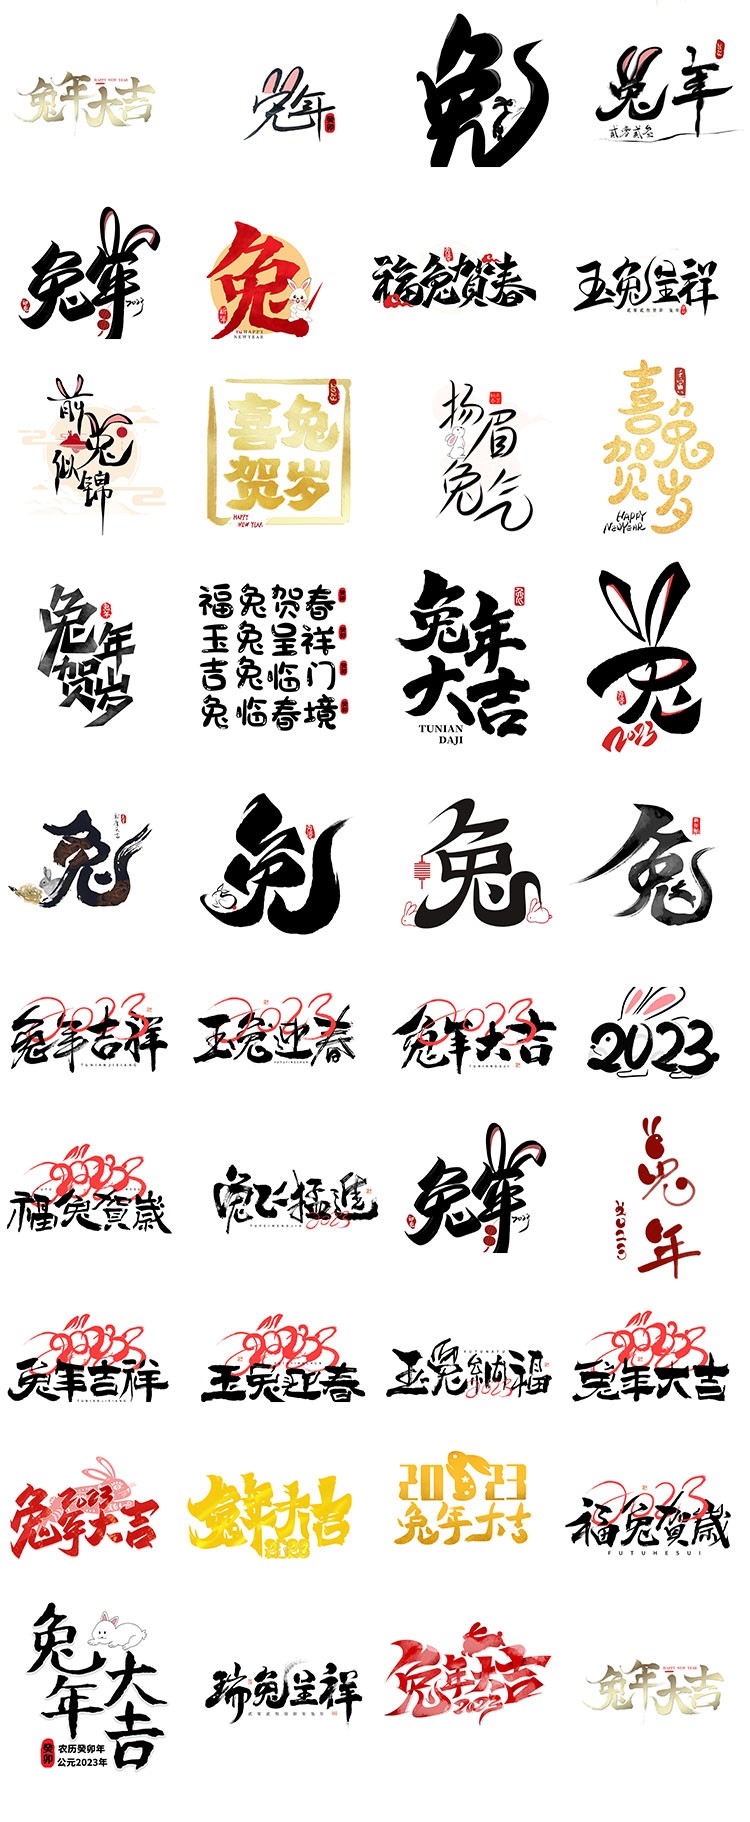 260+兔年新年祝福书法字标设计素材合集 设计素材 第5张